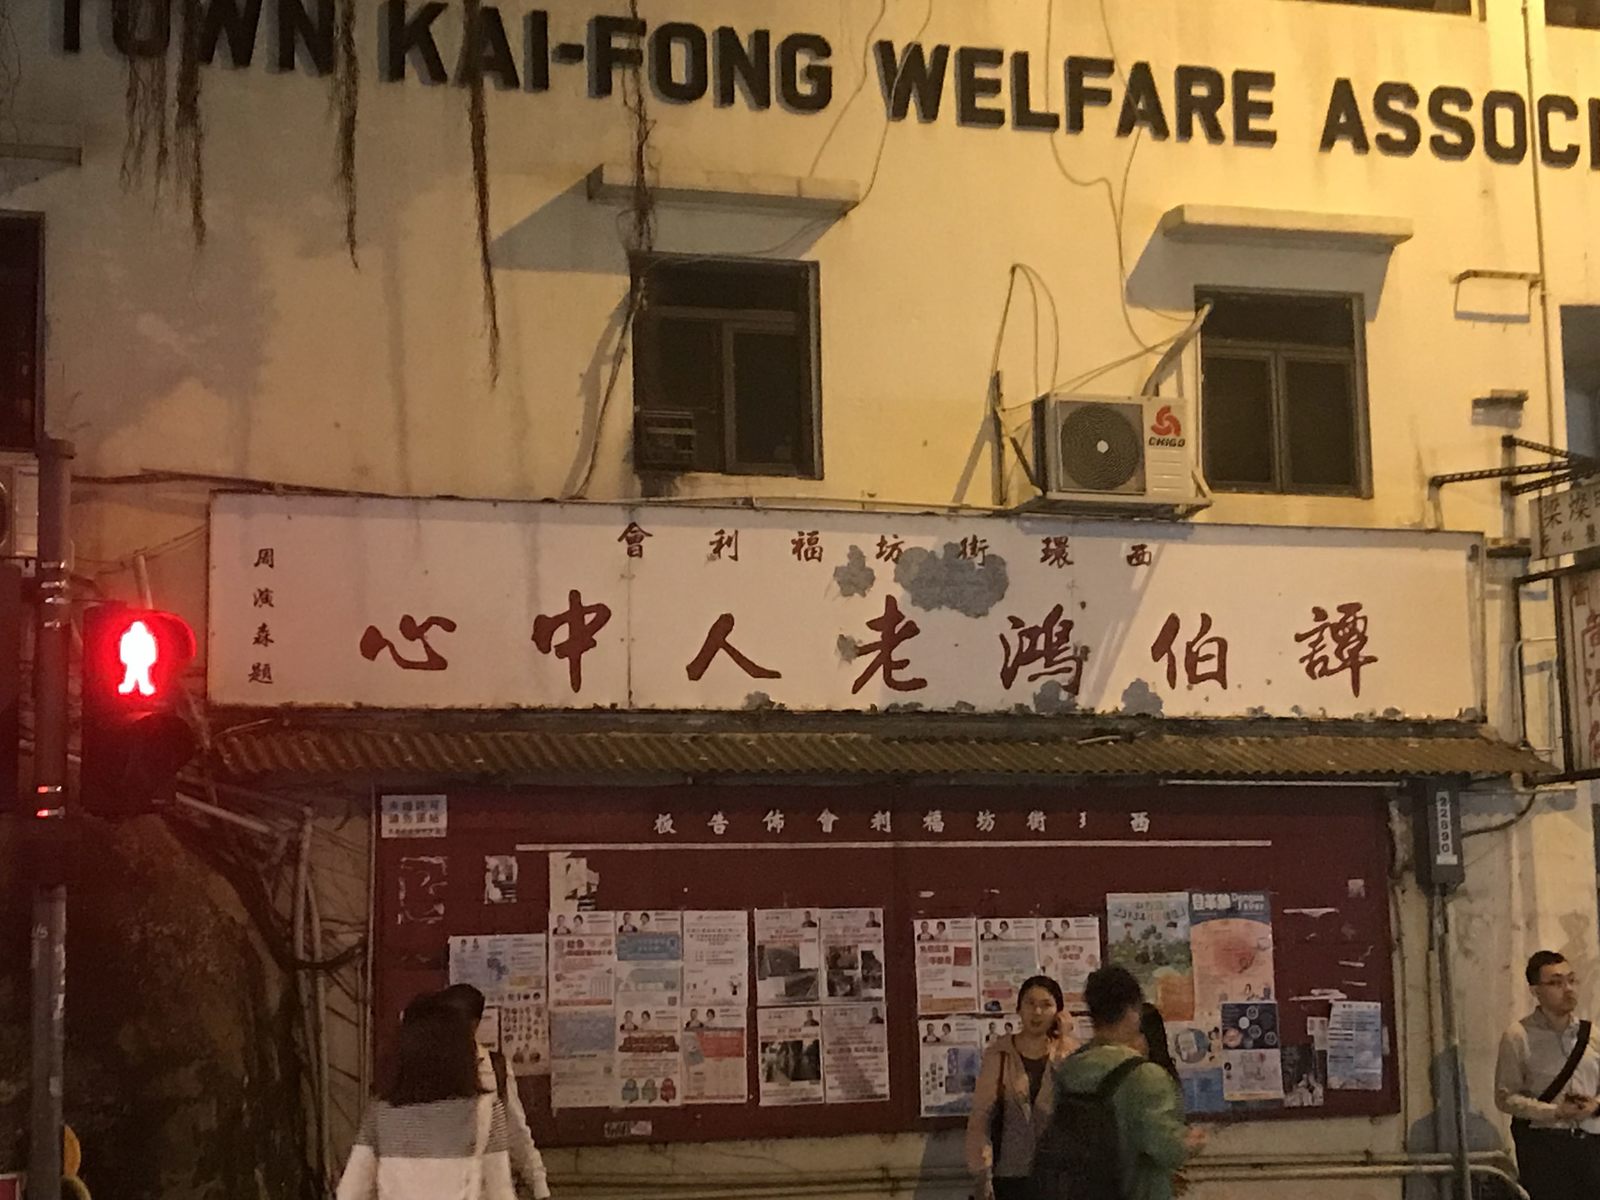 Tam Pak Hung Social Centre for the Elderly sign